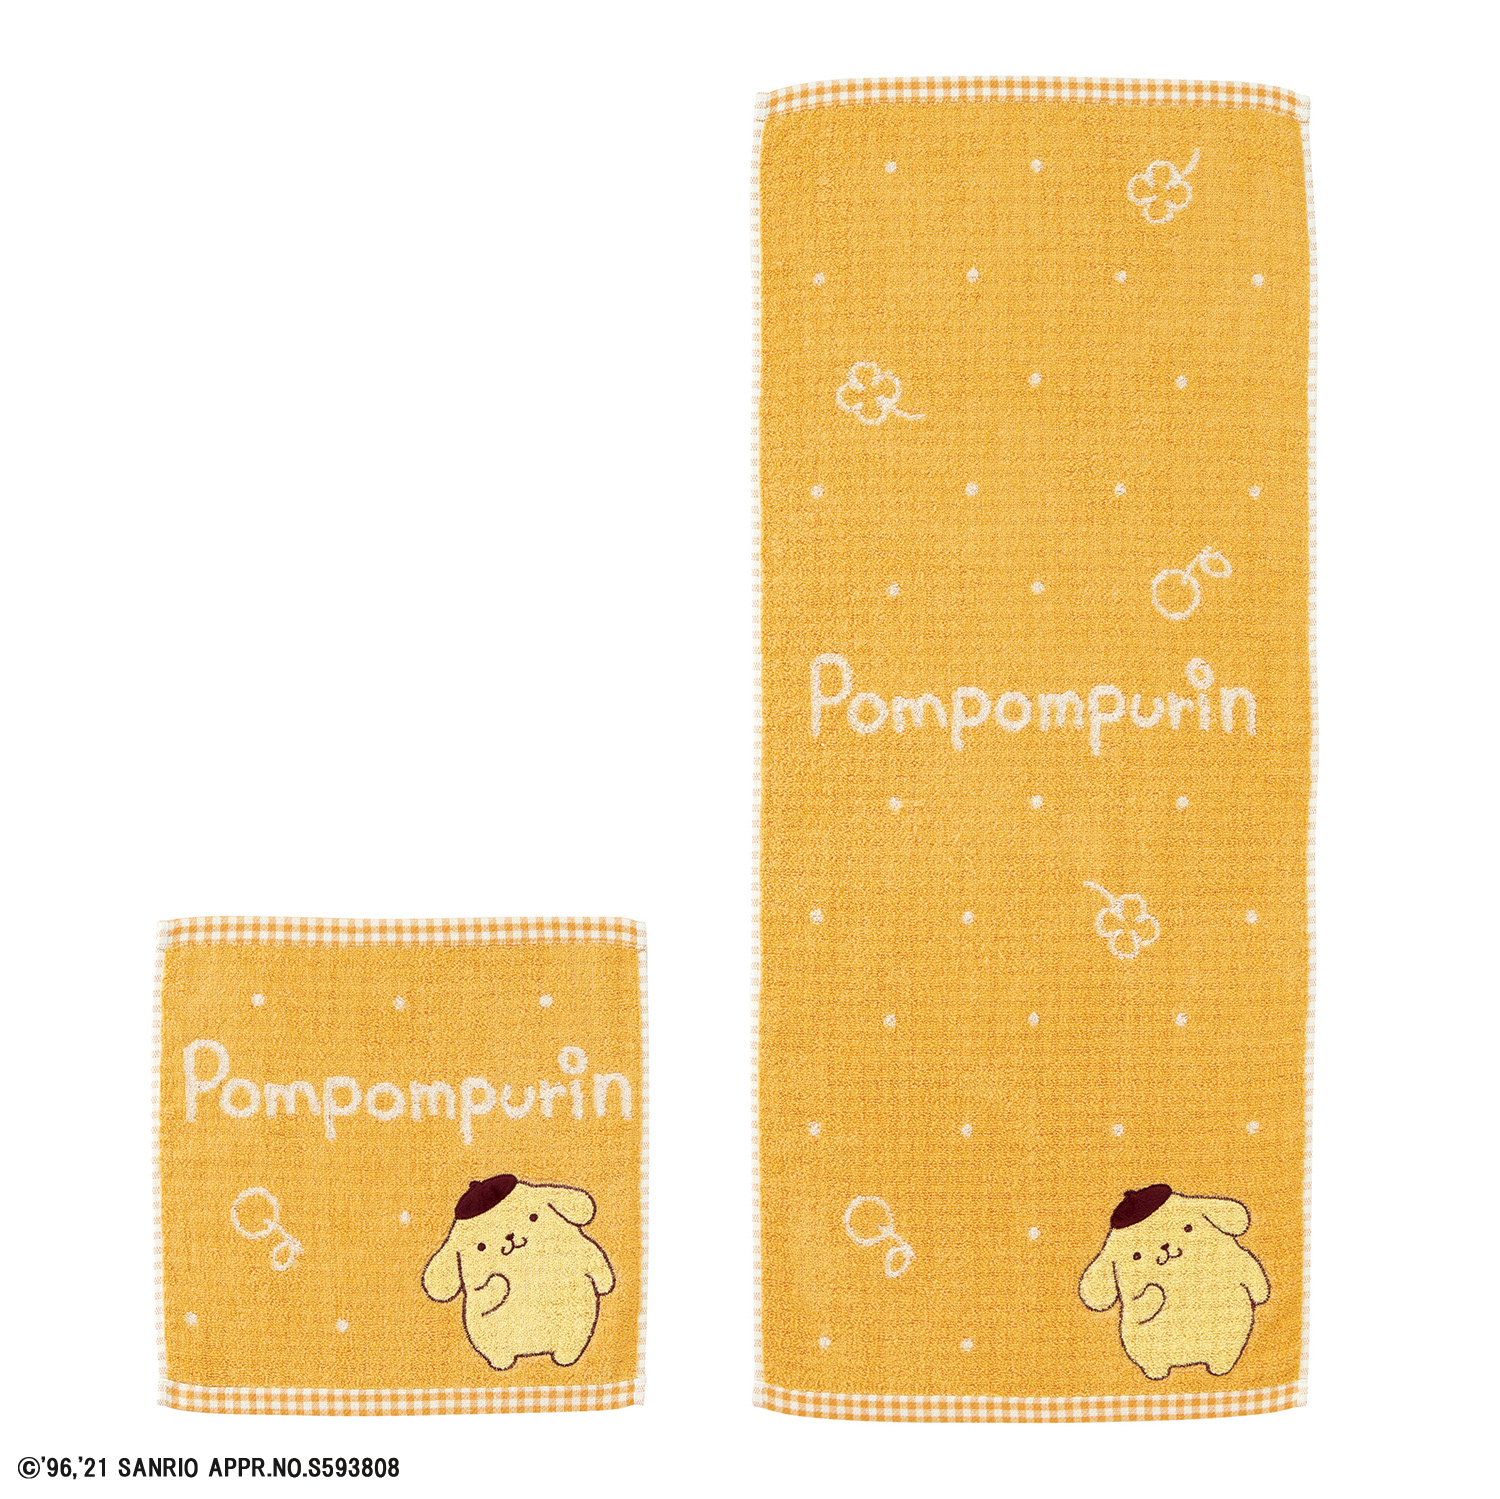 ポムポムプリン | タオル製品をはじめ、寝装品・贈答品・インテリア 